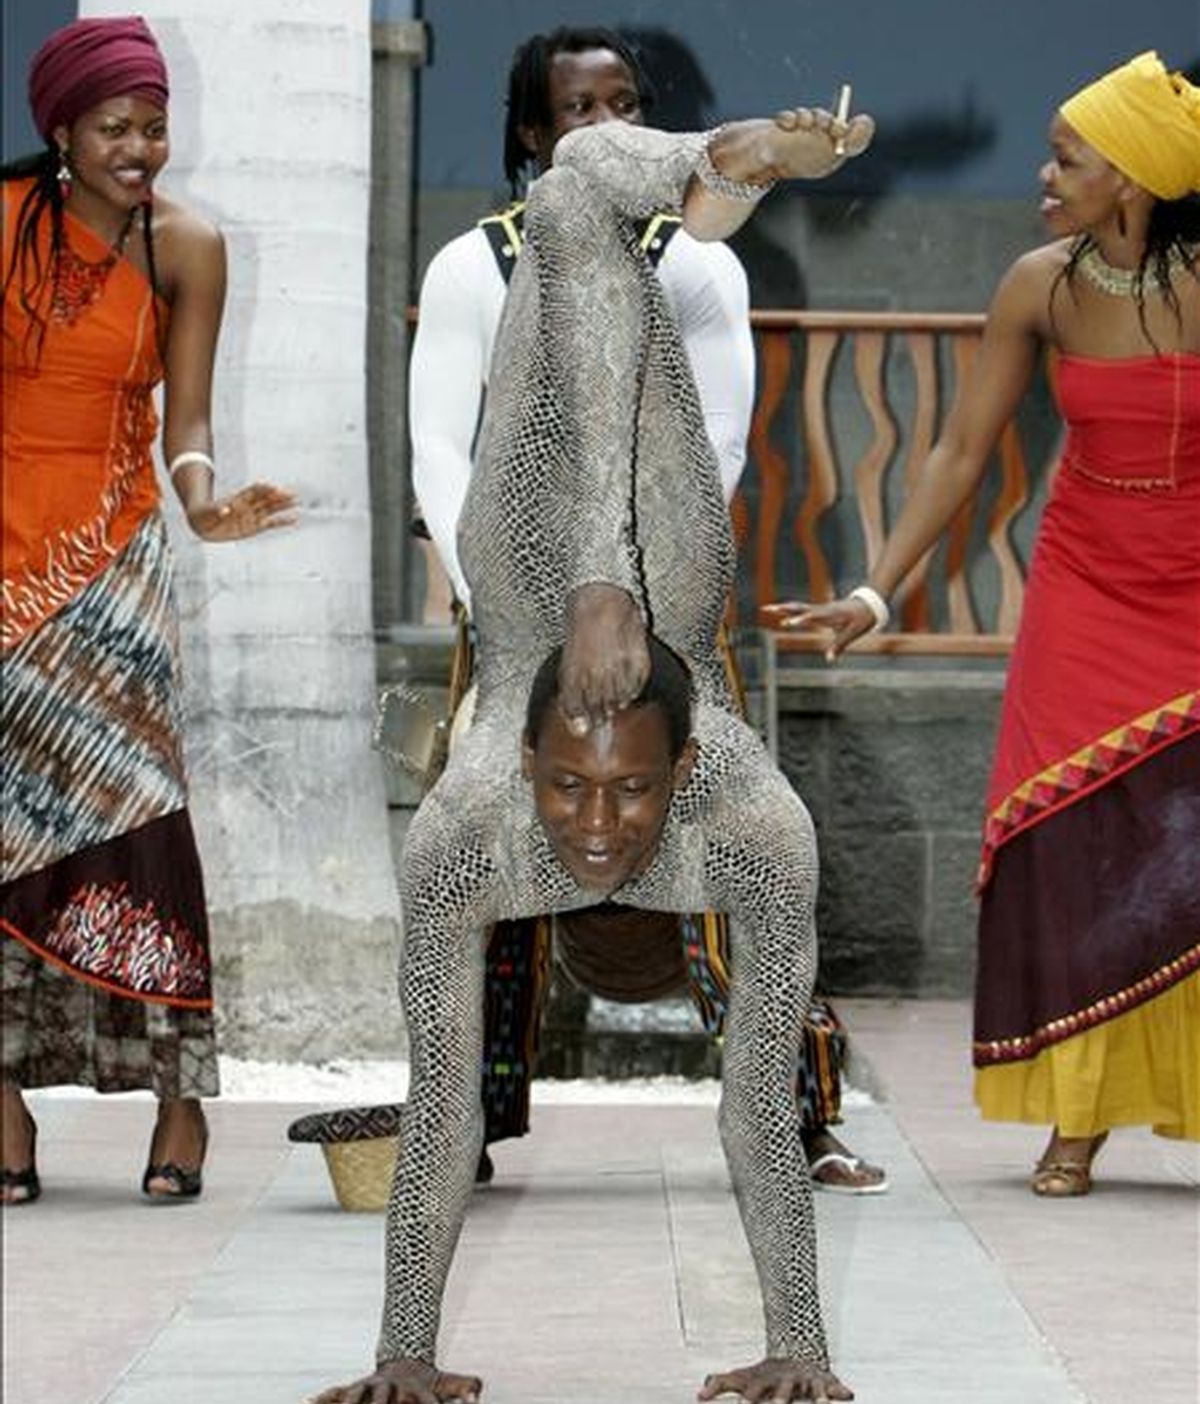 Uno de los artistas del Circo Madre África hace una exhibición de sus dotes para el contorsionismo. EFE/Archivo